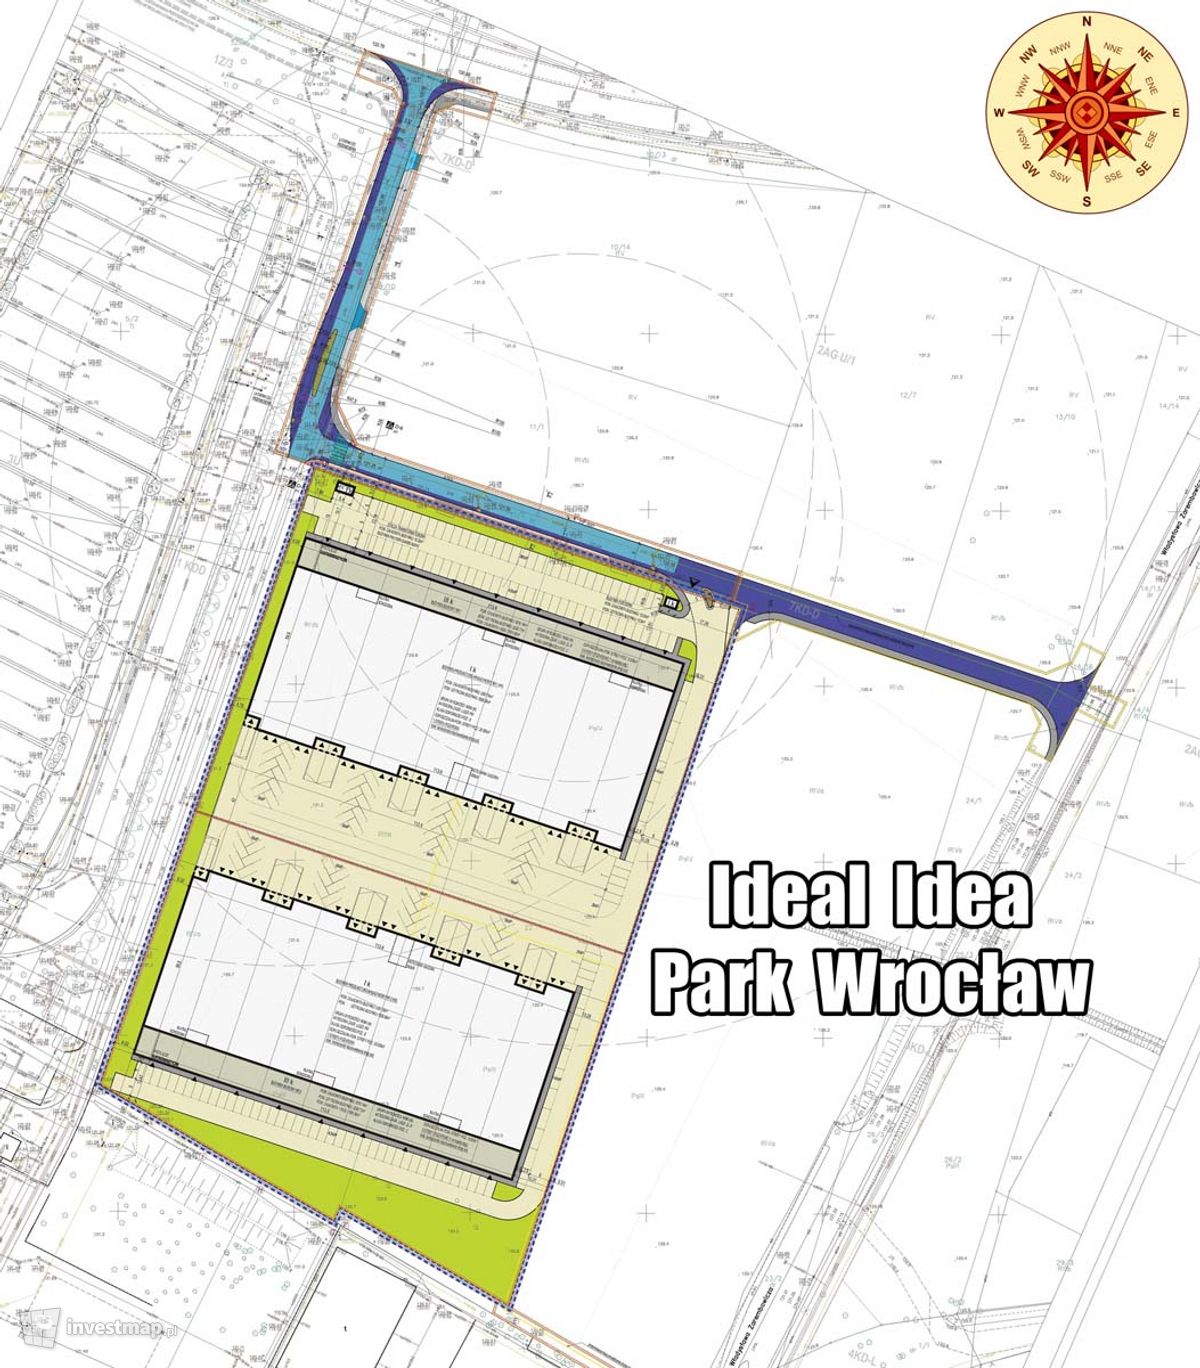 Wizualizacja Ideal Idea Park Wrocław dodał Mariusz Bartodziej